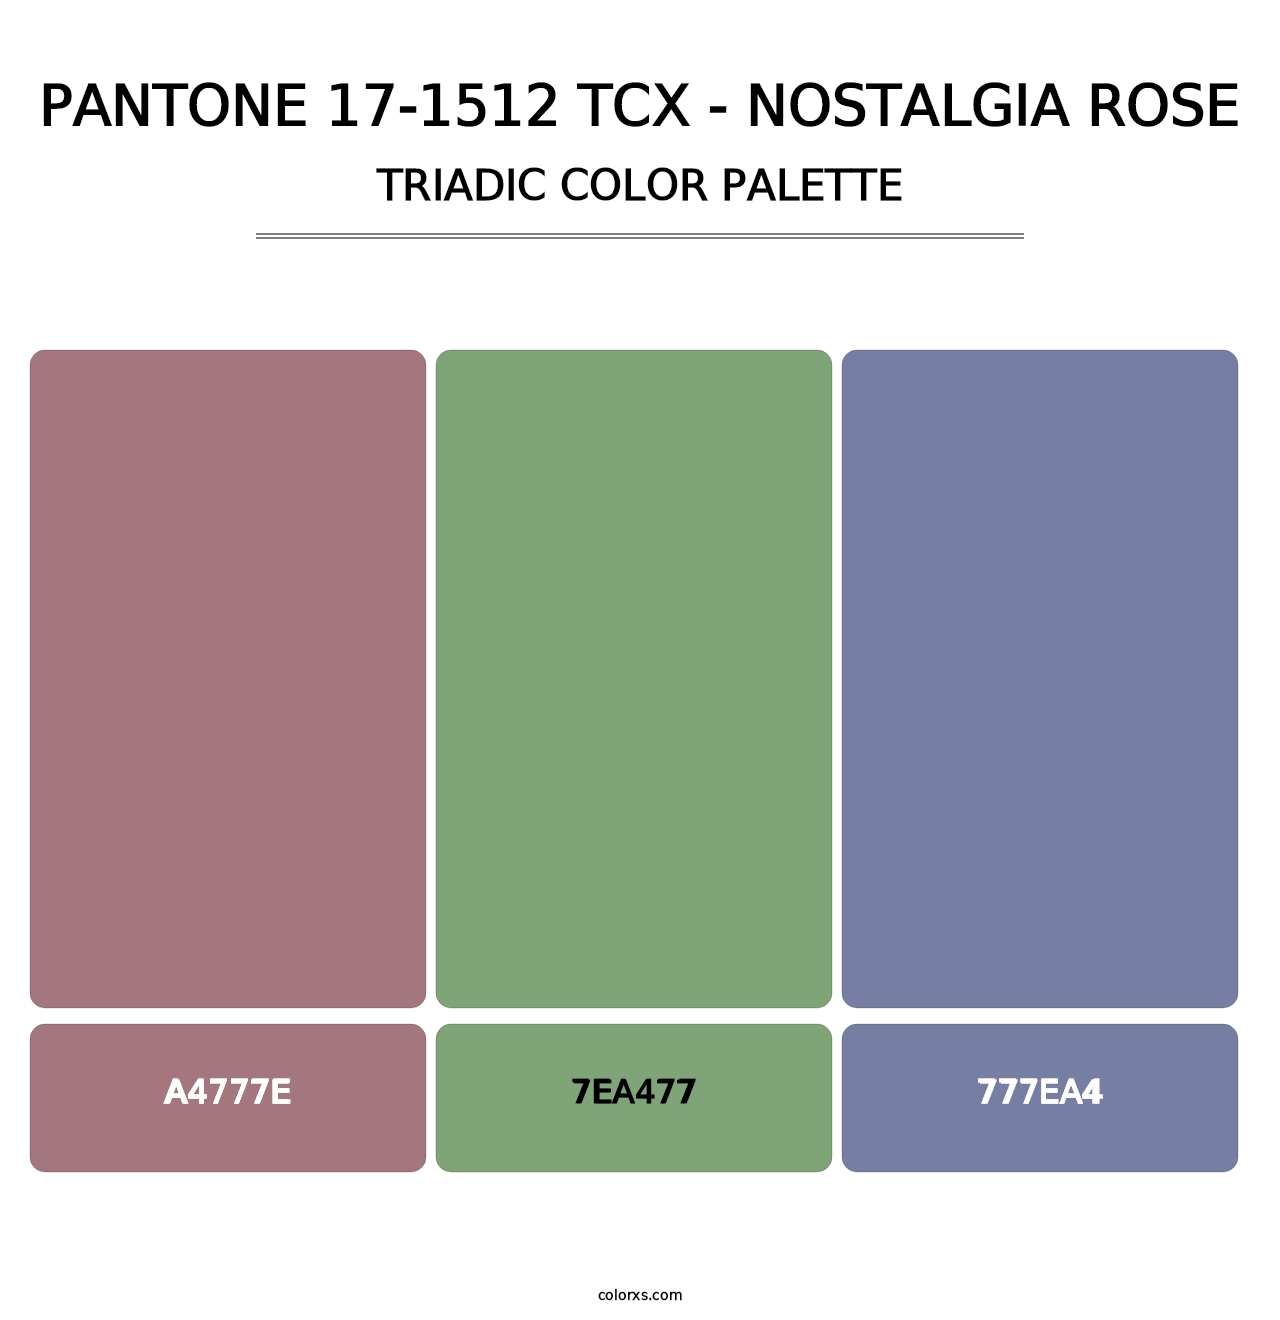 PANTONE 17-1512 TCX - Nostalgia Rose - Triadic Color Palette